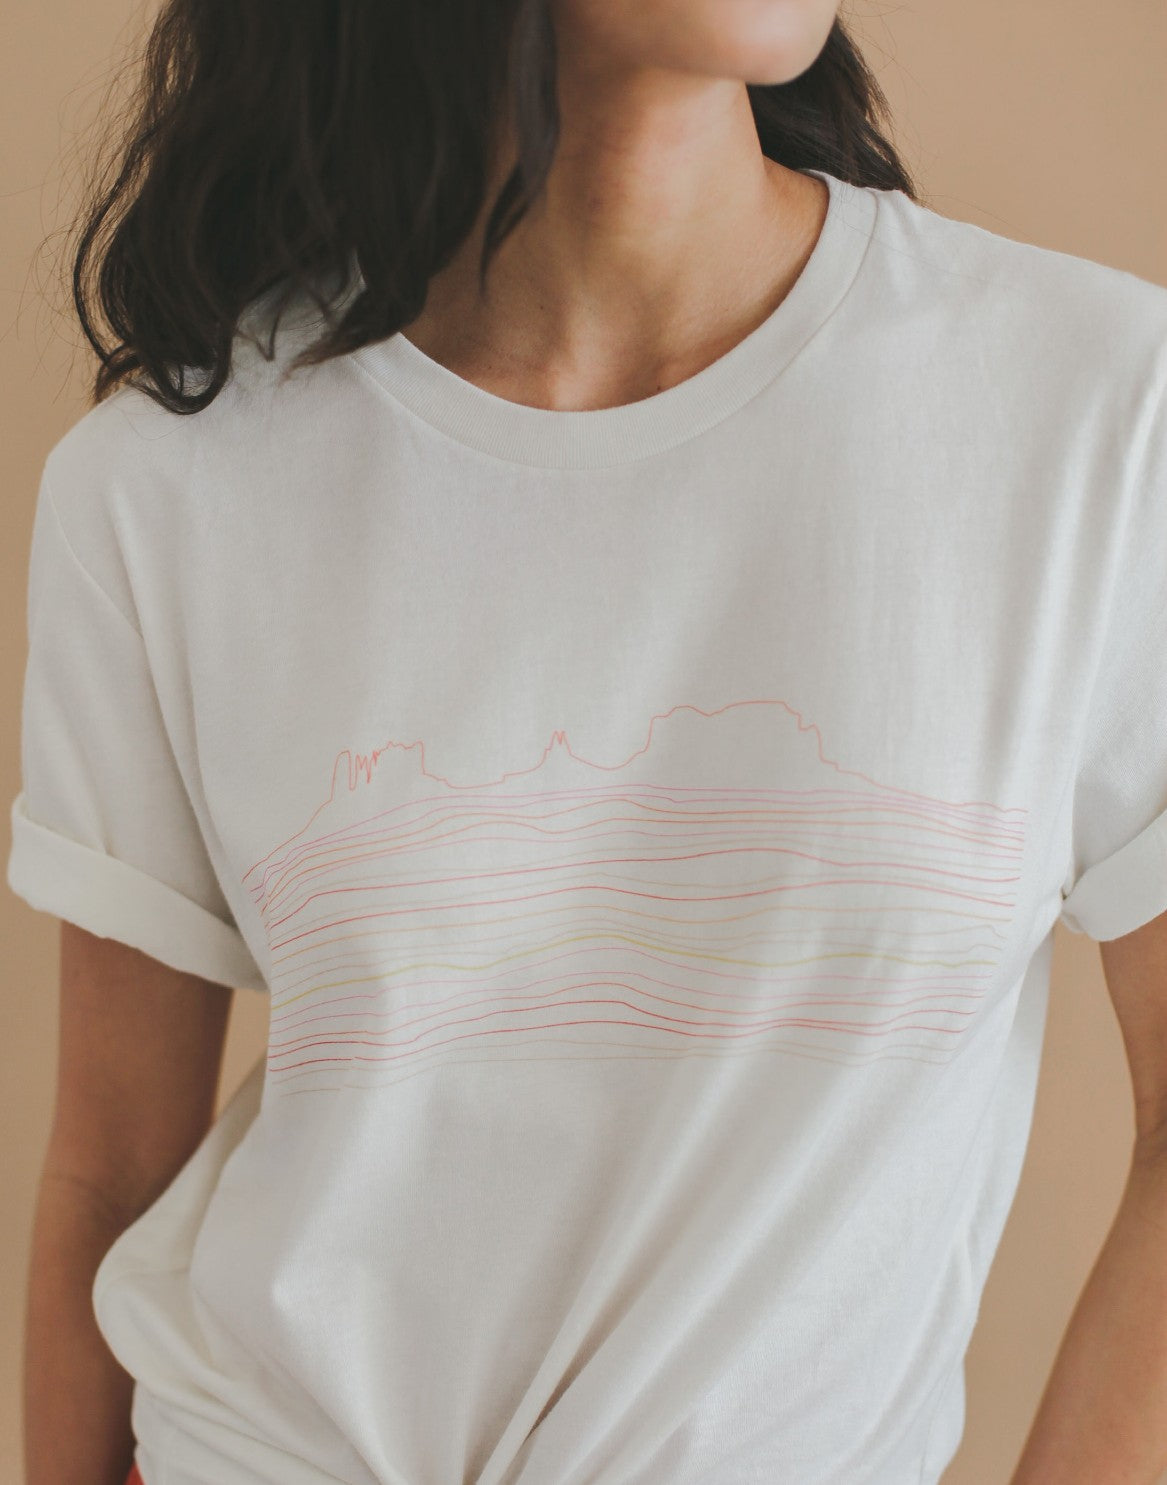 Monument Valley, AZ T-Shirt